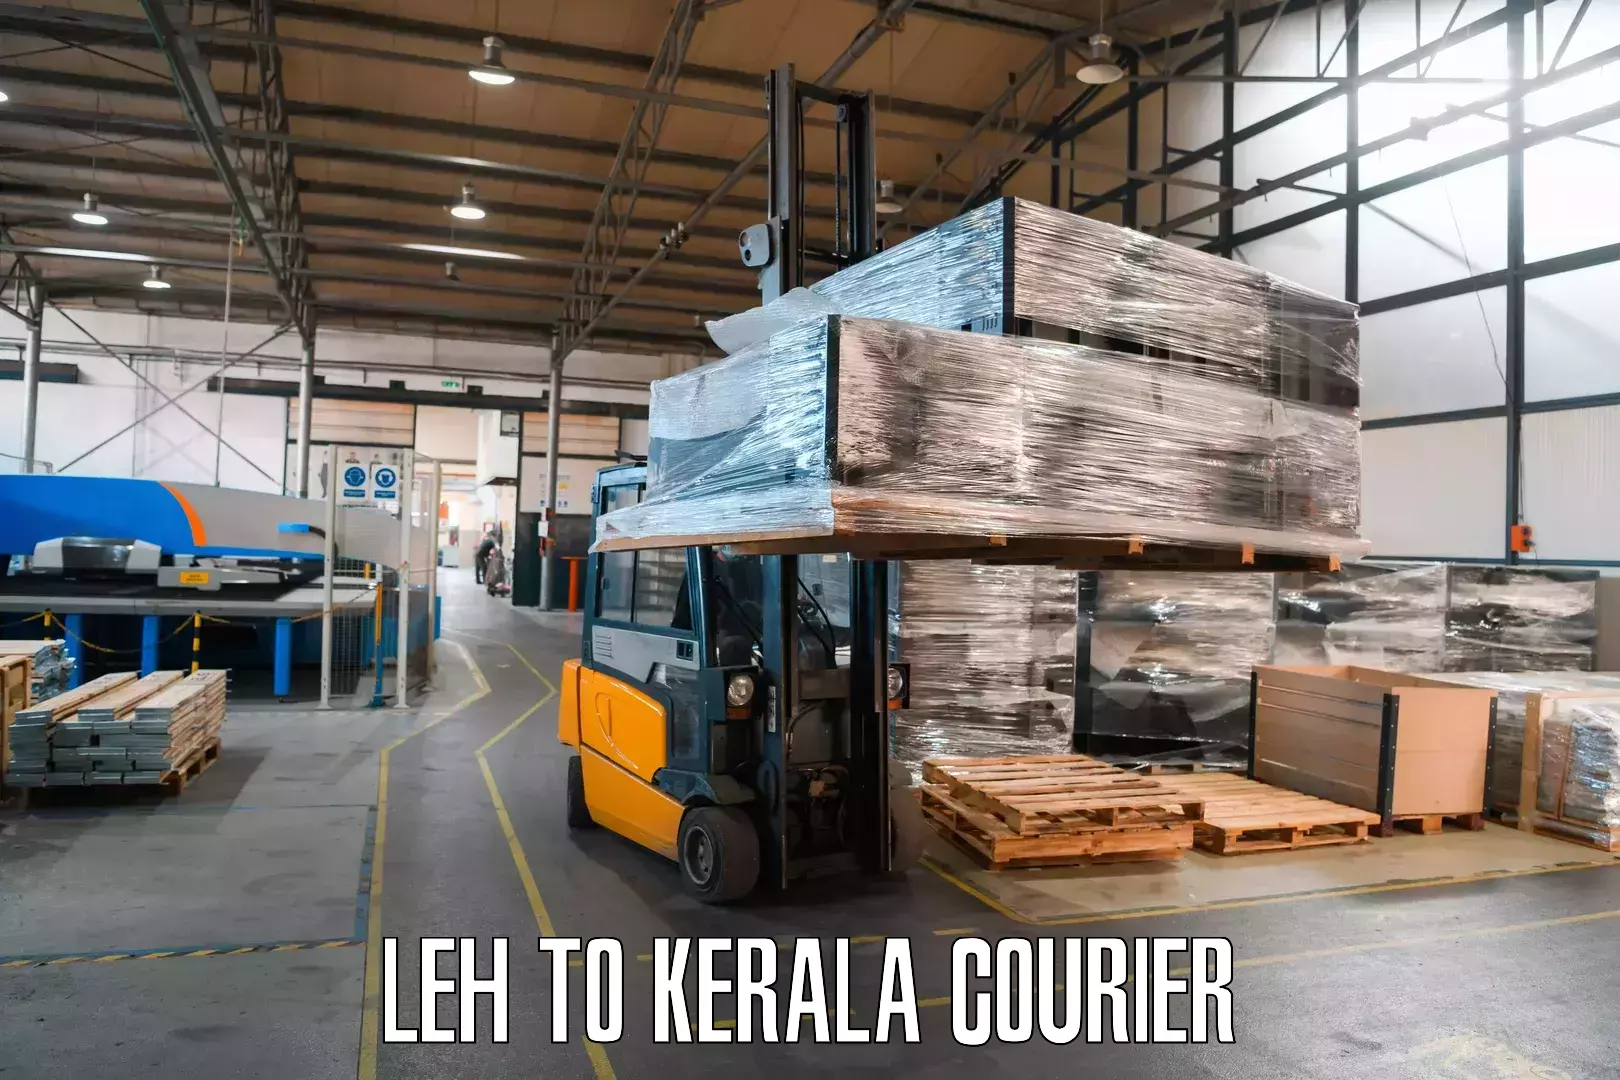 Doorstep parcel pickup in Leh to Kerala